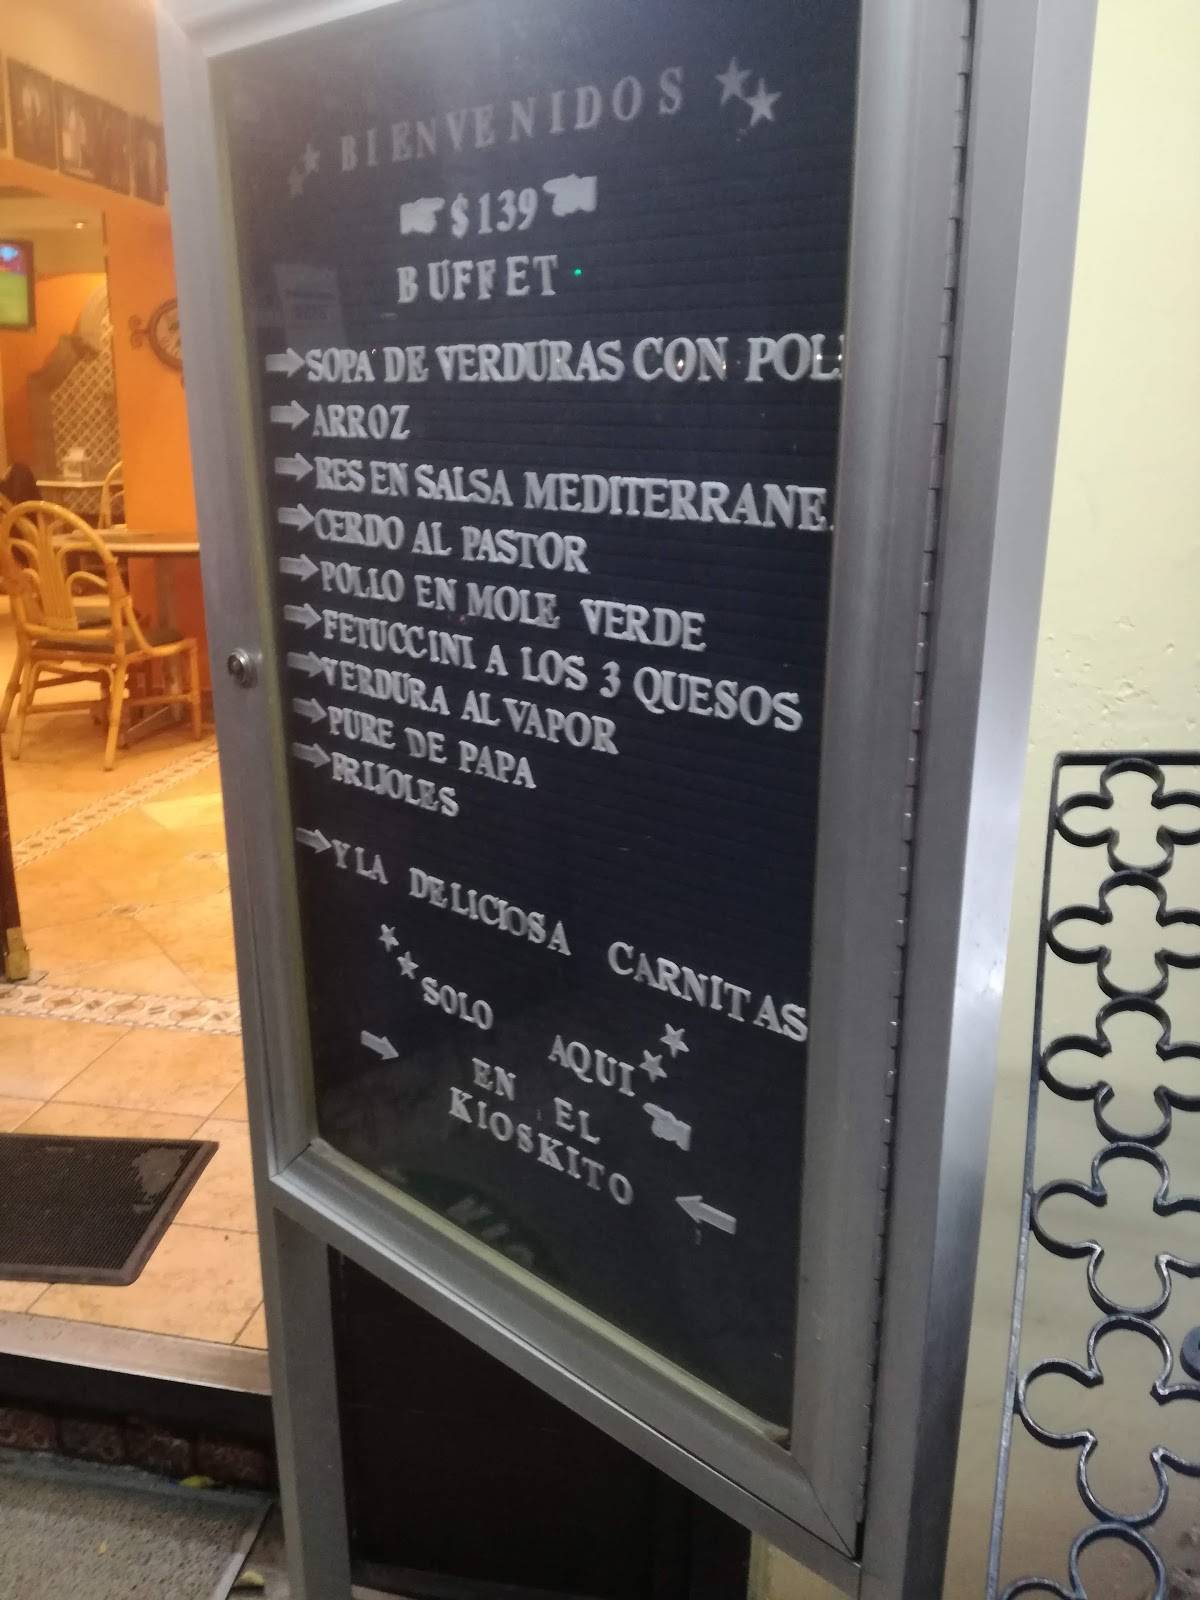 Carta del restaurante El Kioskito, Ciudad del México, Av Sonora 6